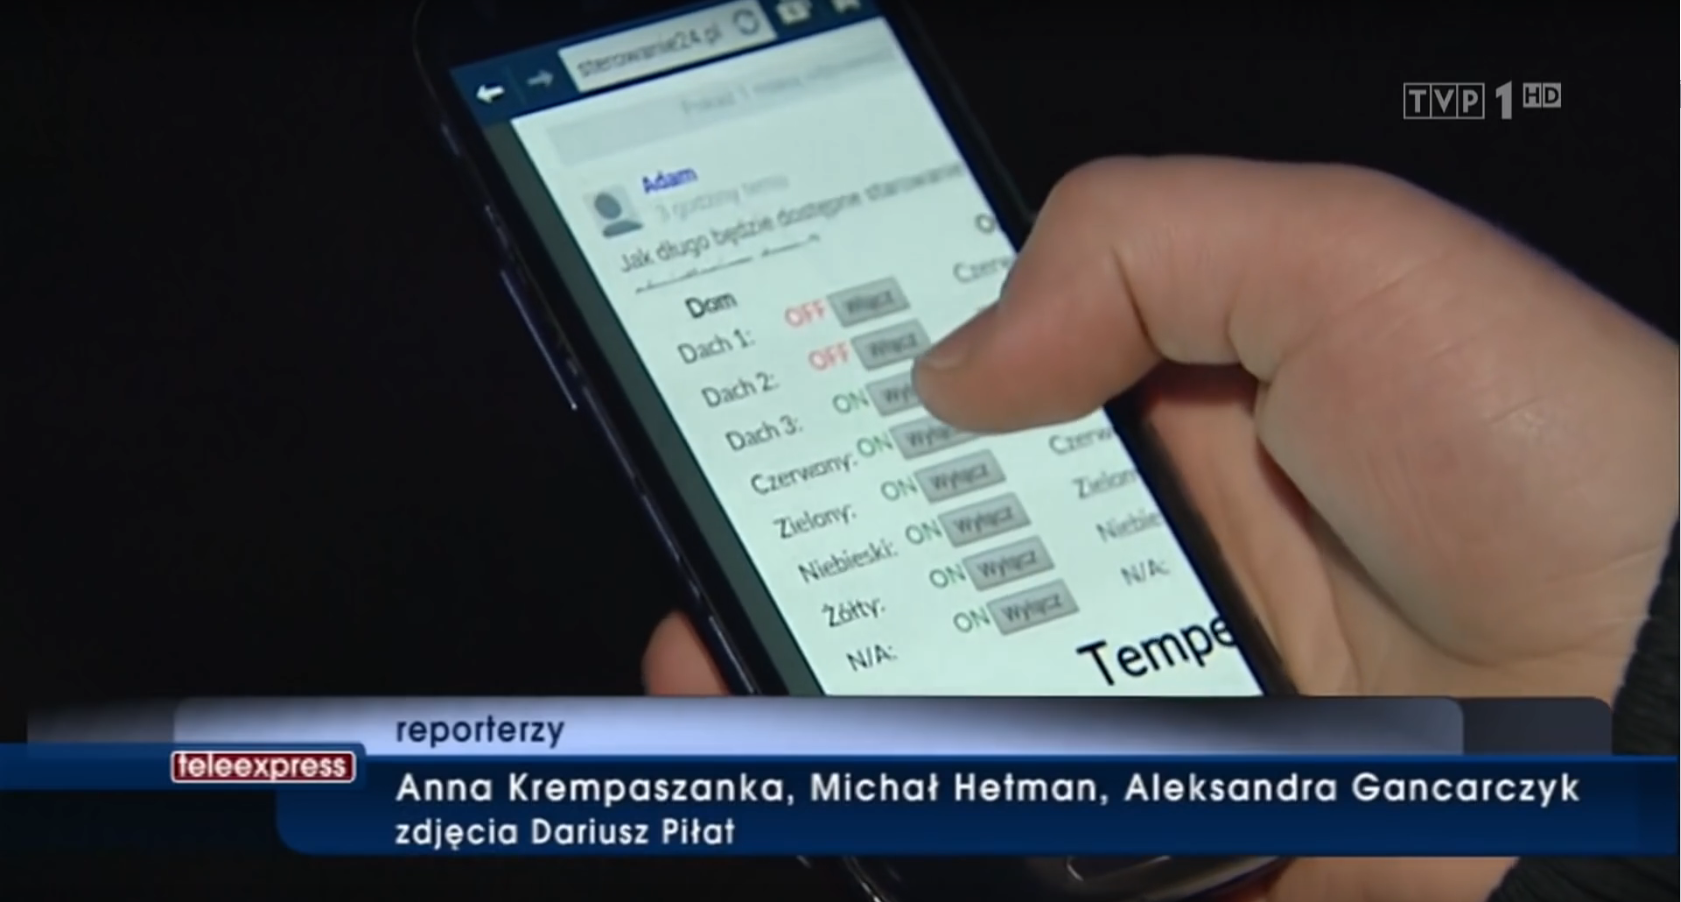 Tomasz prezentuje działanie strony Sterowanie24.pl przy użyciu smartphona w Teleexpressie